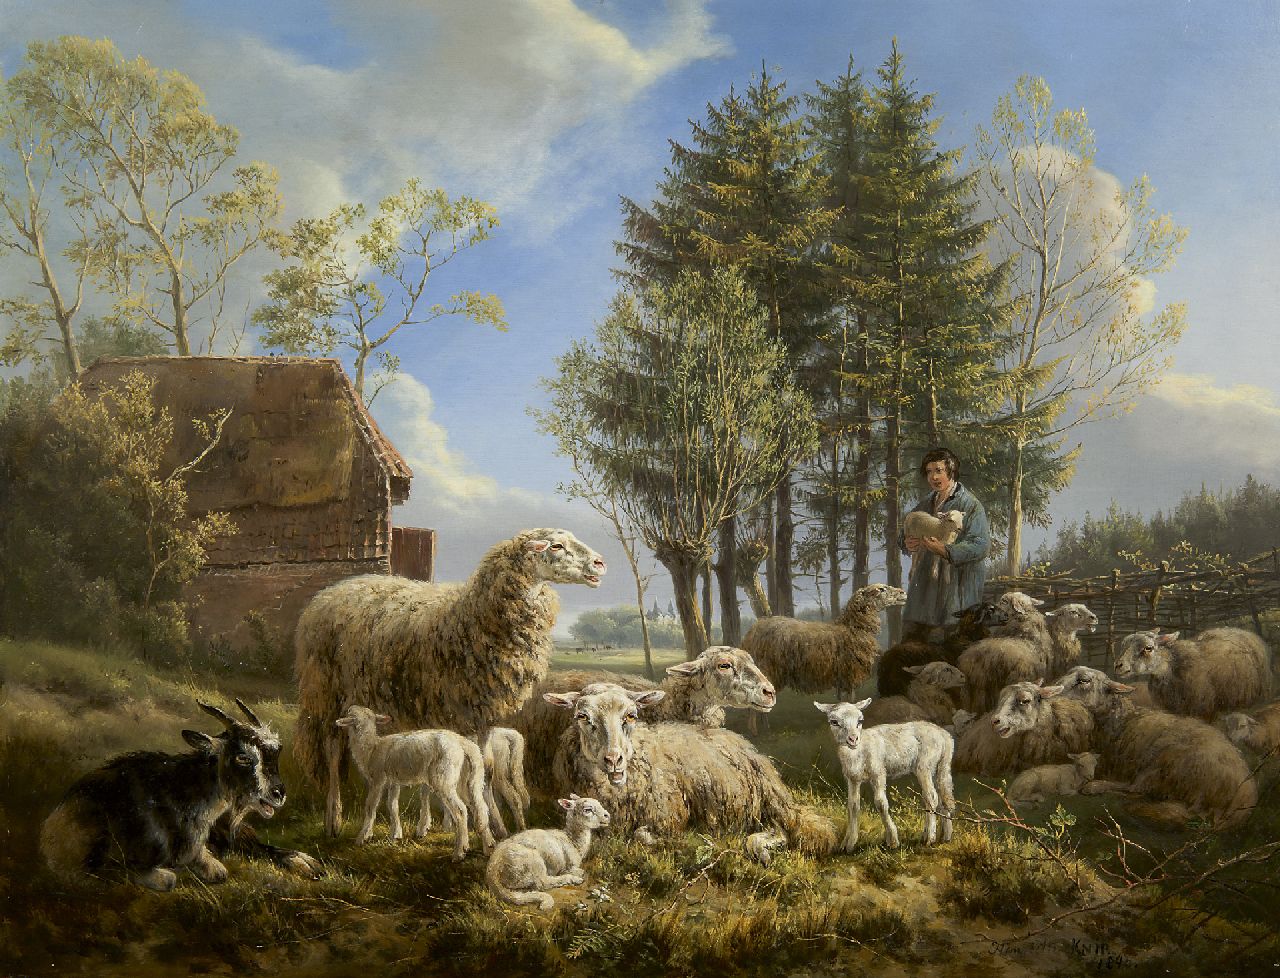 Ronner-Knip H.  | Henriette Ronner-Knip, Schaapherder met kudde, olieverf op paneel 46,3 x 60,1 cm, gesigneerd rechtsonder en gedateerd 1840